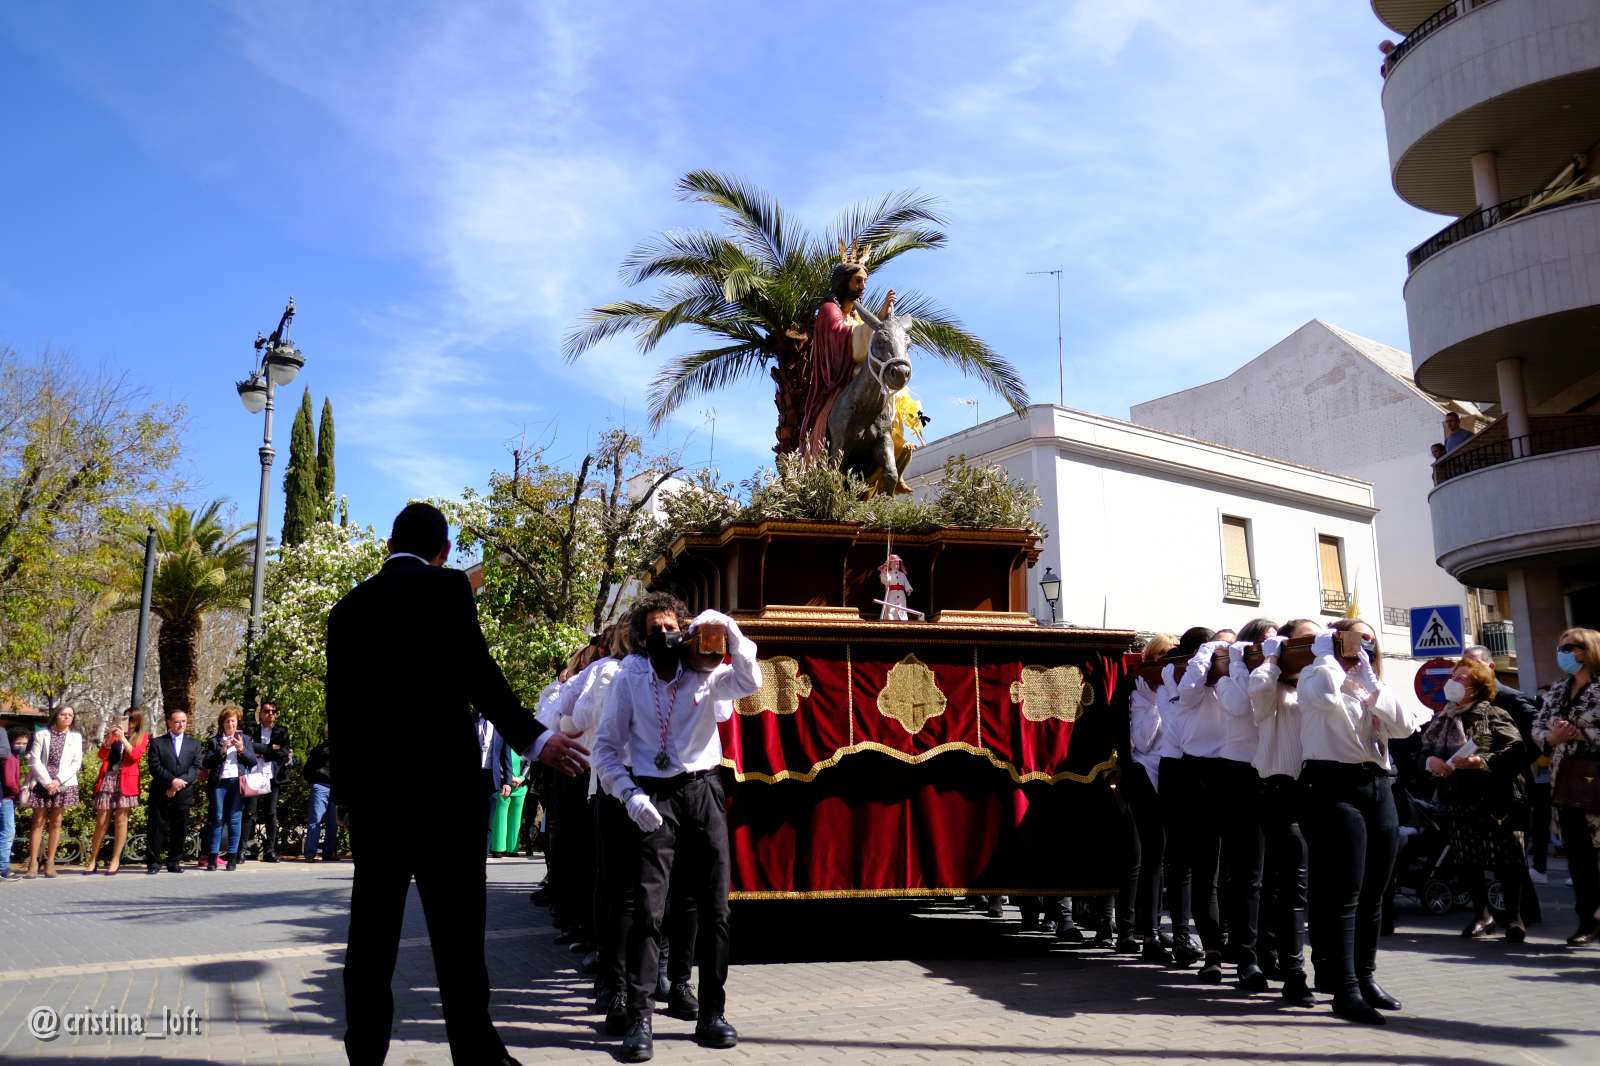 Domingo de Ramos en Tomelloso, fotografías de @cristina_loft